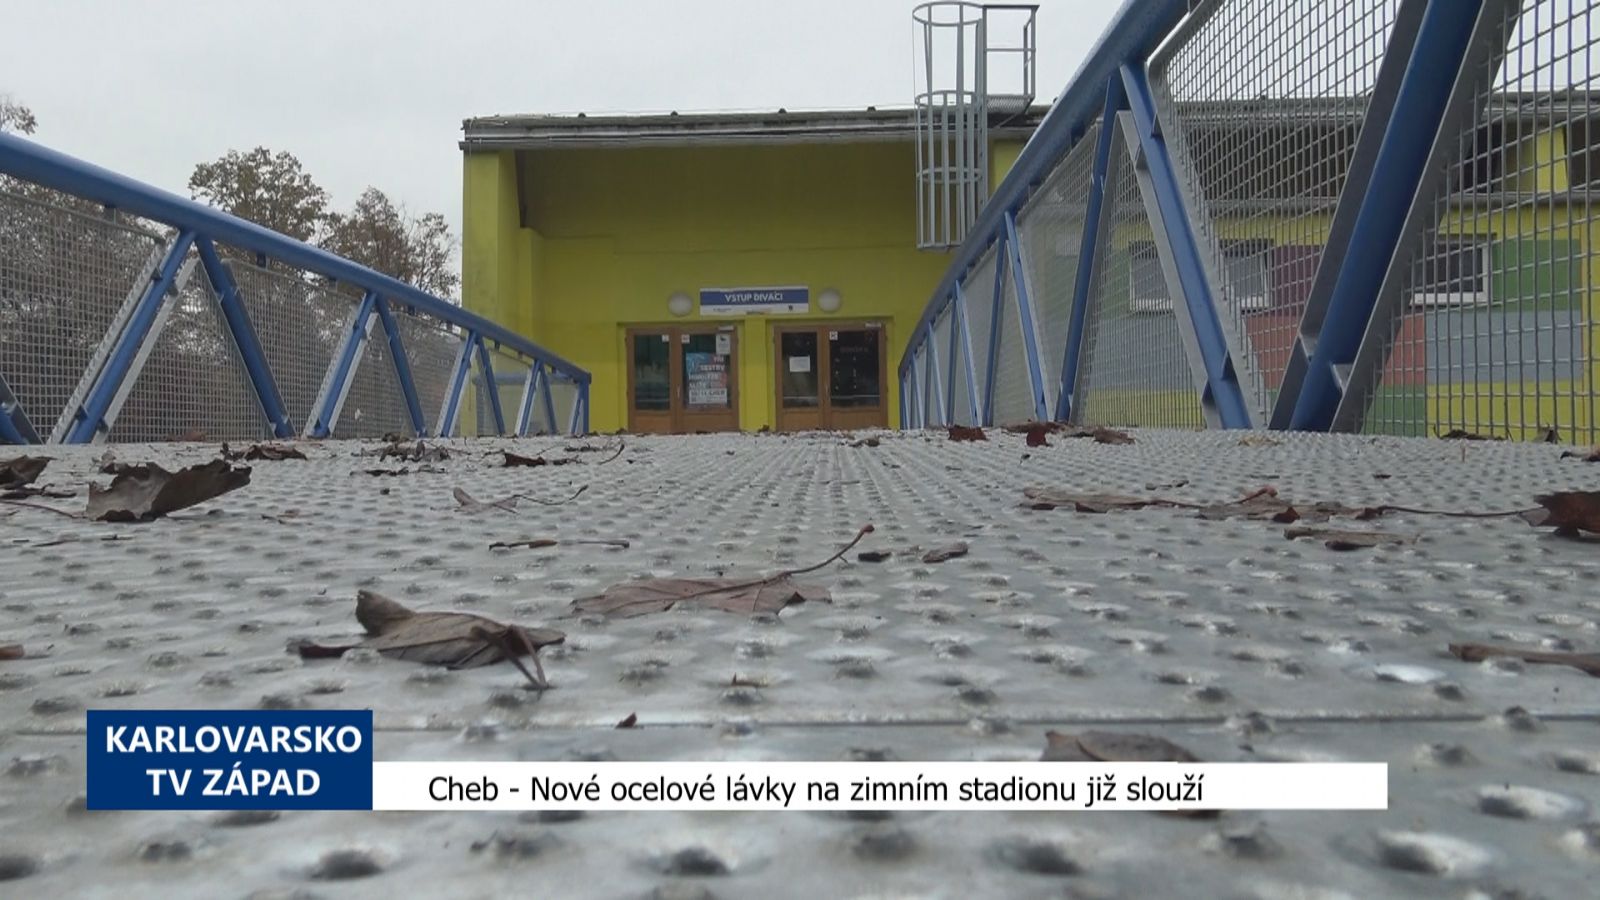 Cheb: Nové ocelové lávky na zimním stadionu již slouží (TV Západ)